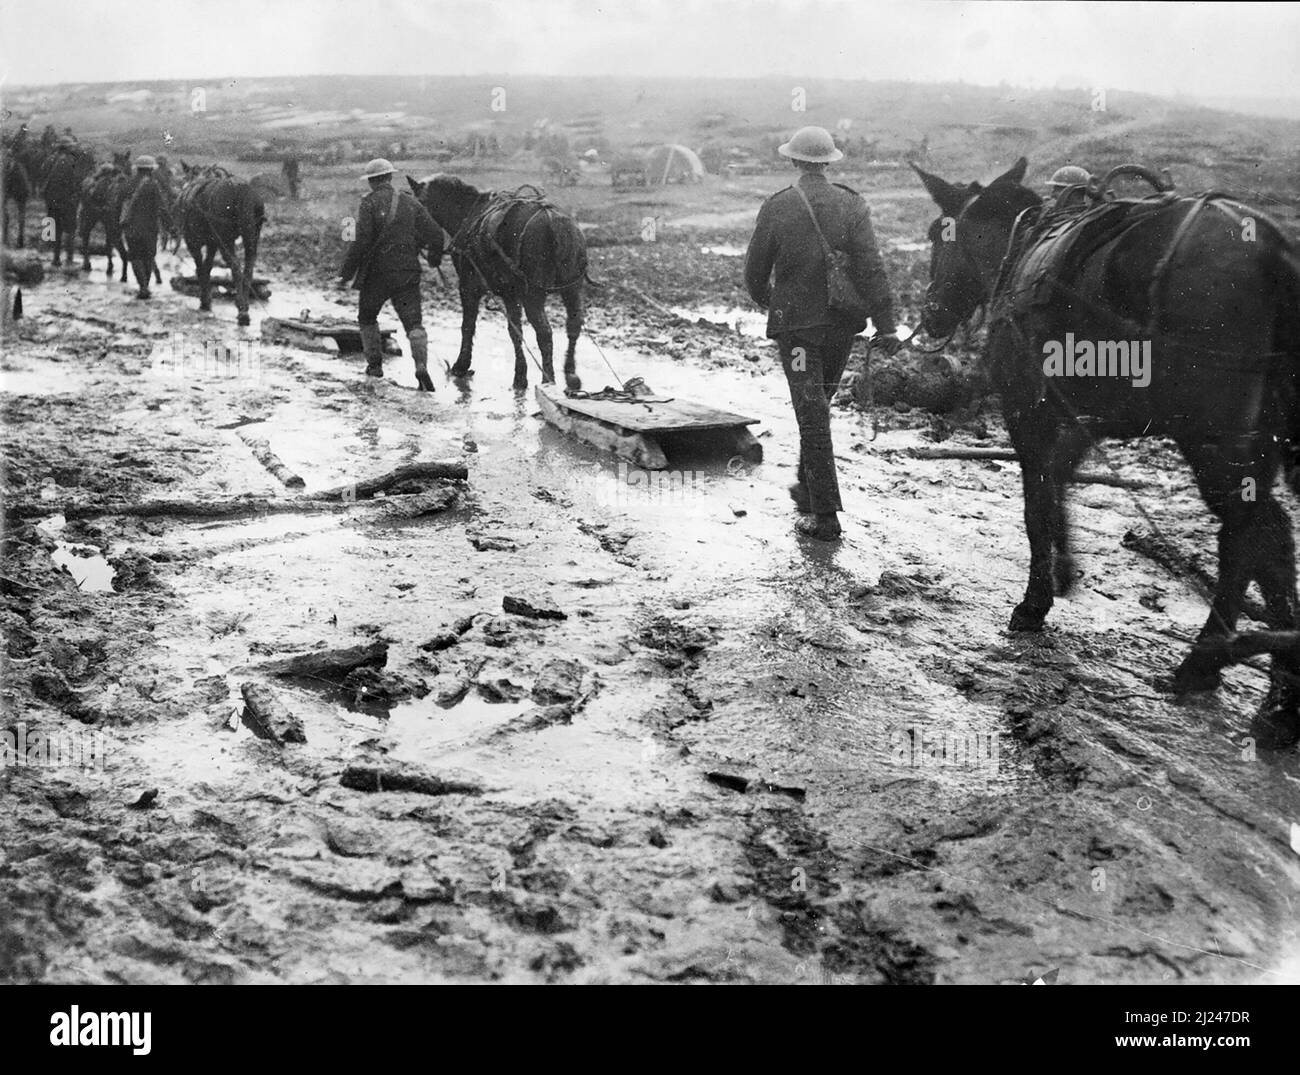 Le slitte, normalmente utilizzate per il trasporto di feriti, sono trascinate da cavalli su terreni fangosi, a causa del maltempo, a le Sars, Pas de Calais sul fronte Somme, ottobre 1916. Foto Stock